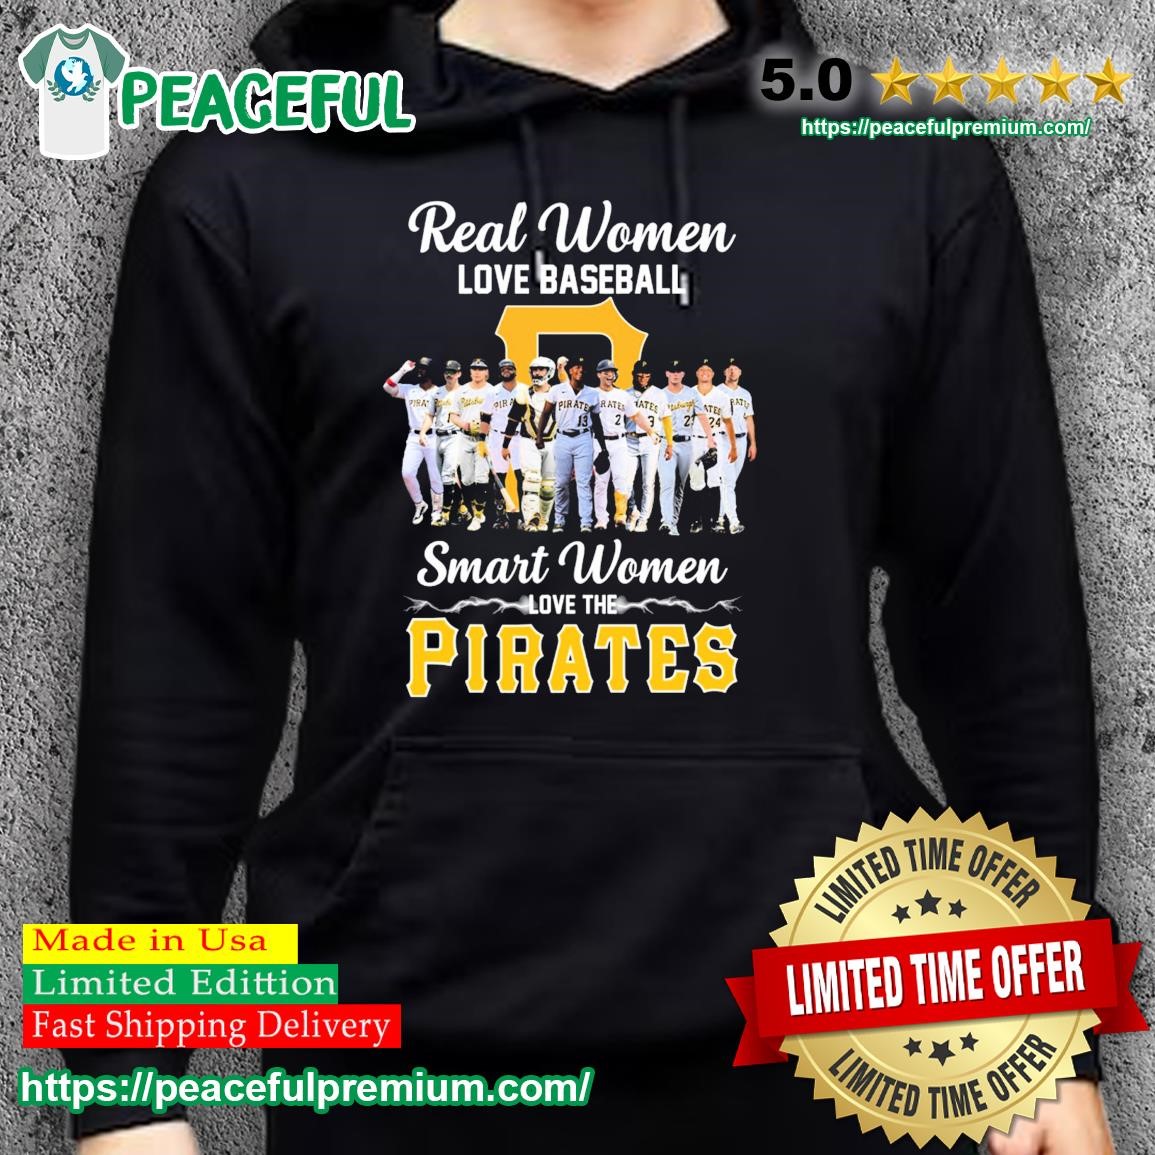 pirates baseball women's shirts